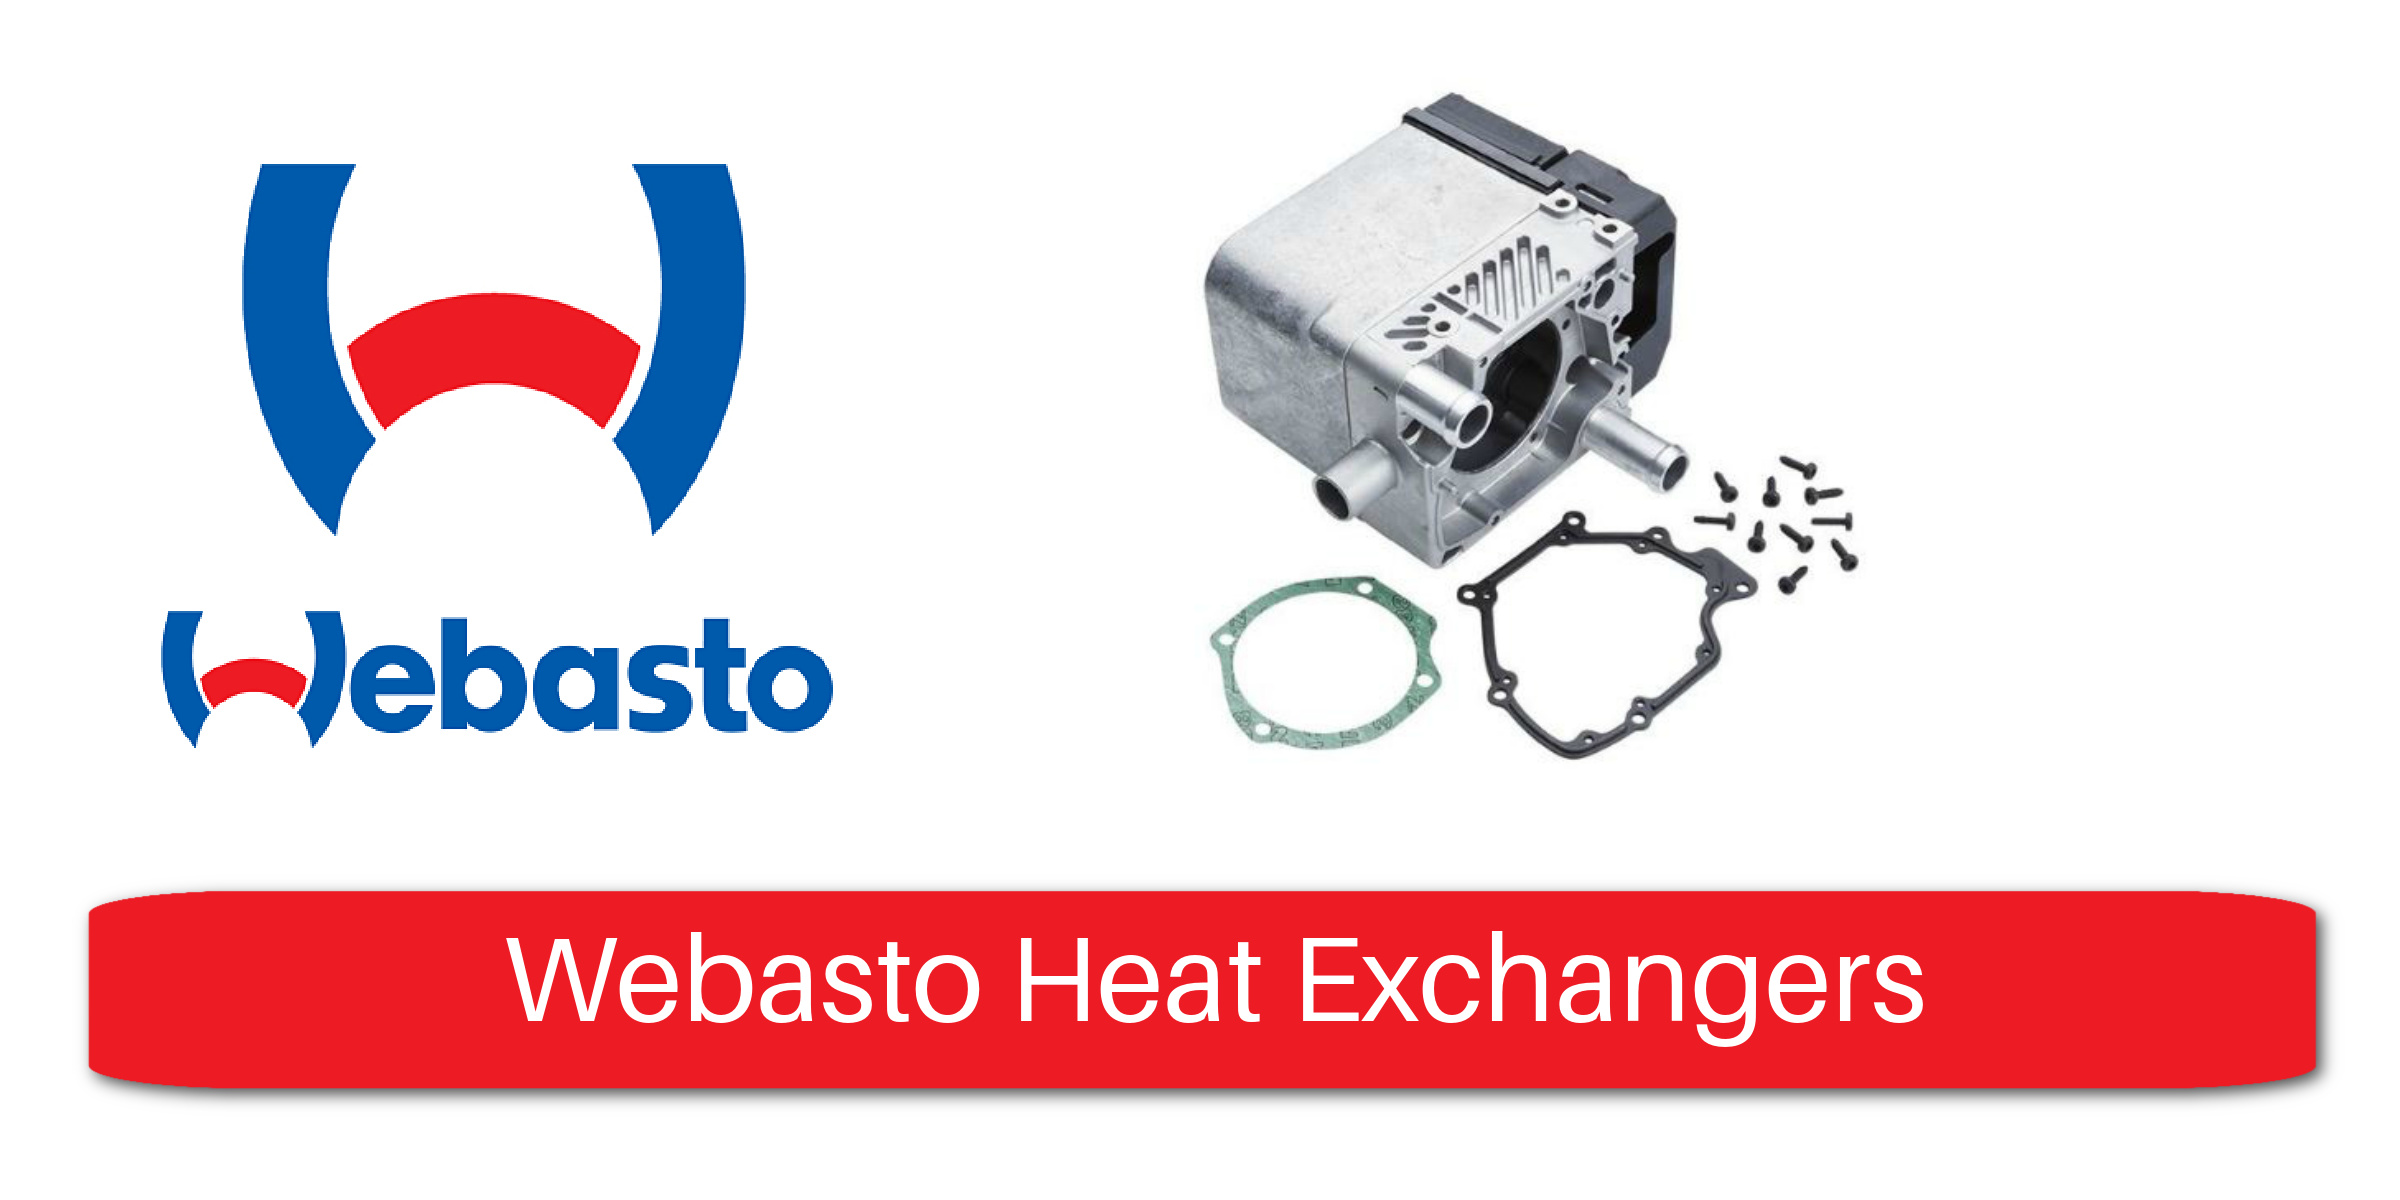 Webasto Heat Exchangers